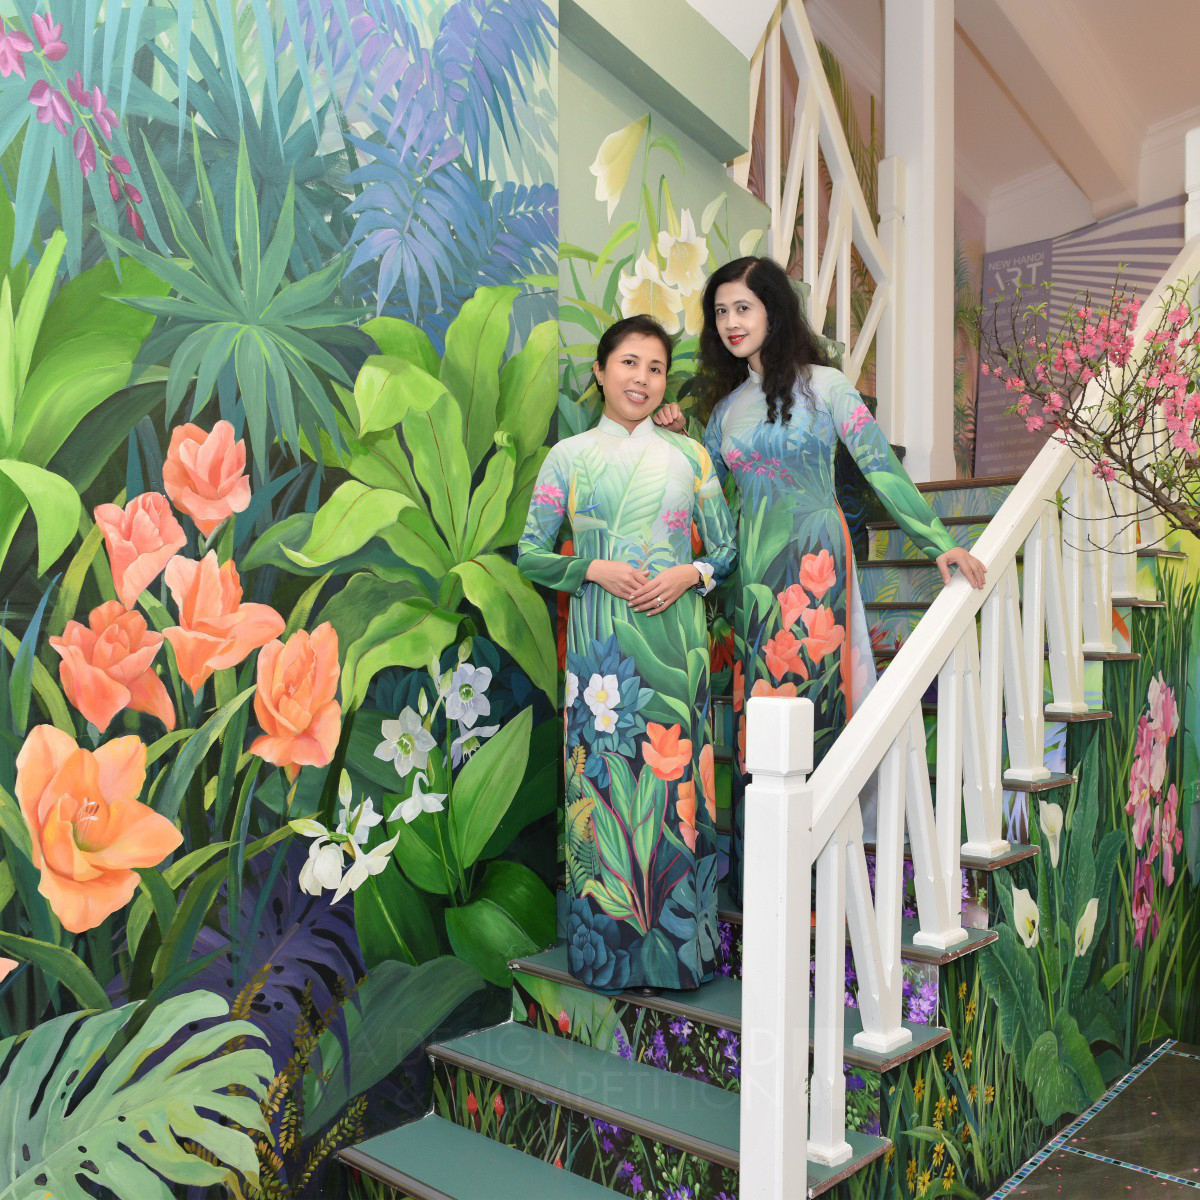 New Hanoi Arts House Public Artwork by Nguyen Thi Thu Thuy